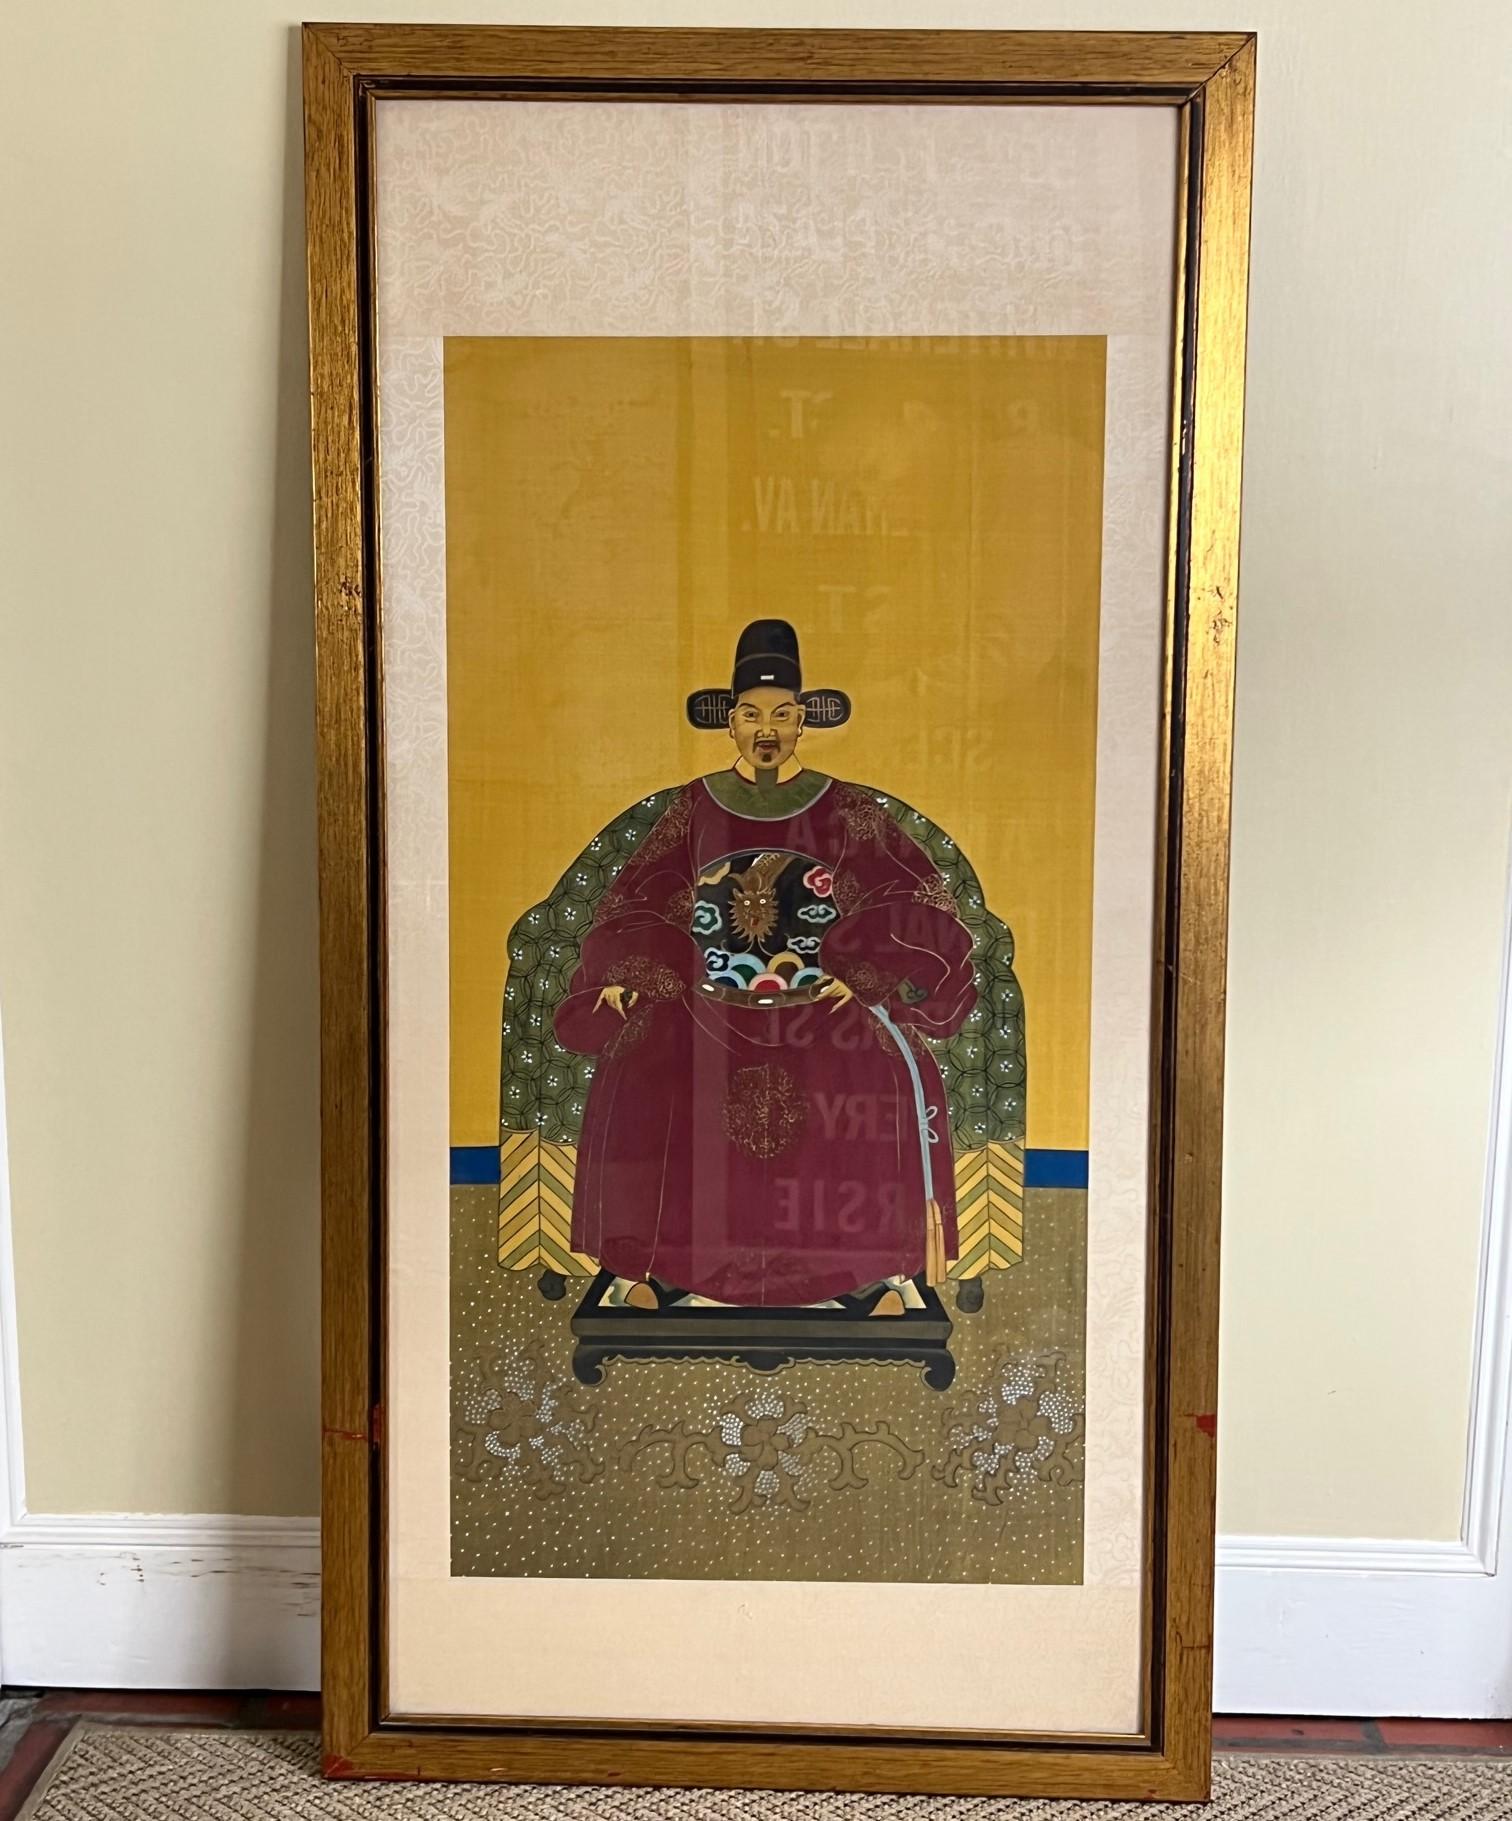 Paire ancienne de portraits d'ancêtres de la dynastie Qing représentant un homme et une femme. Peint à la main sur soie et encadré sous verre dans une large bordure de soie texturée. Le verre a rendu difficile la photographie de ces tableaux et les